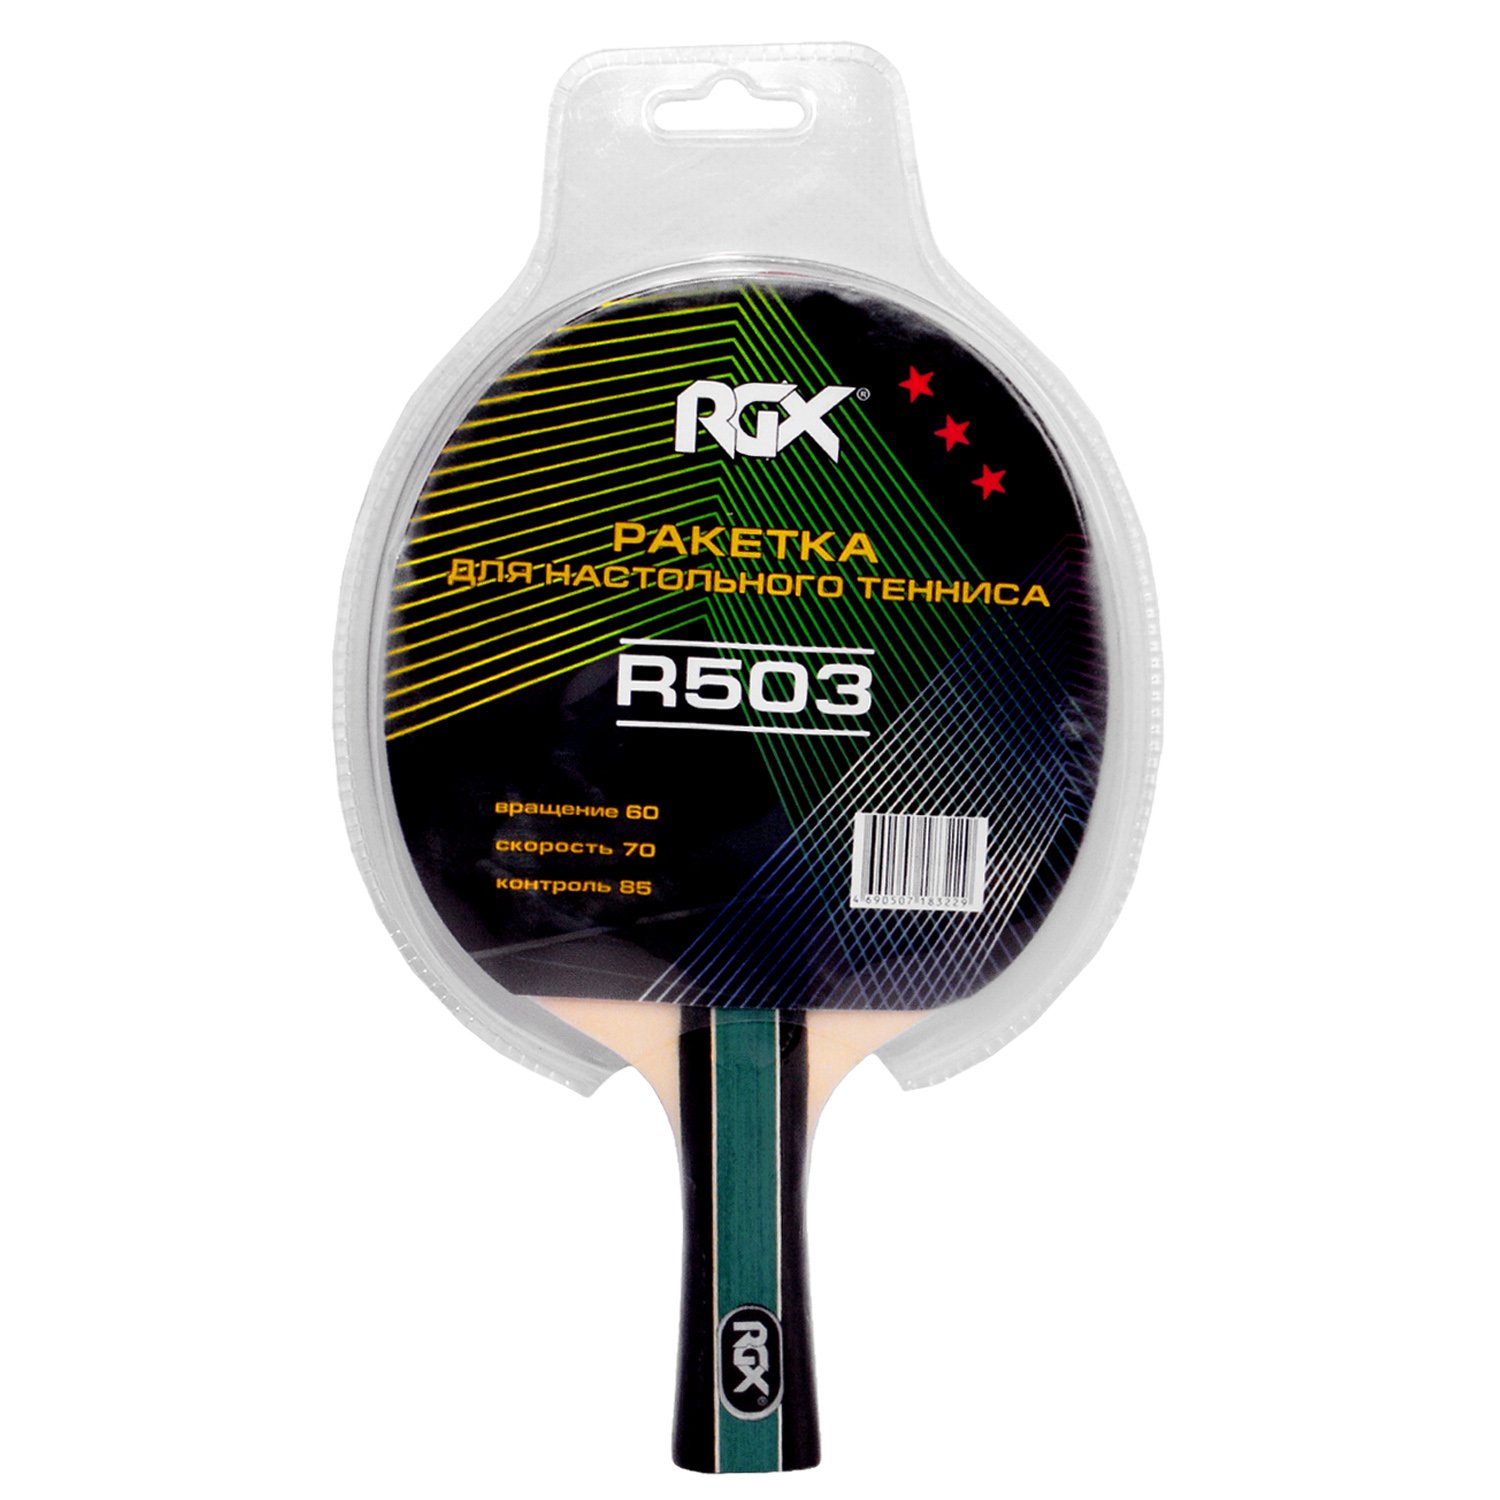 Ракетка для настольного тенниса R503